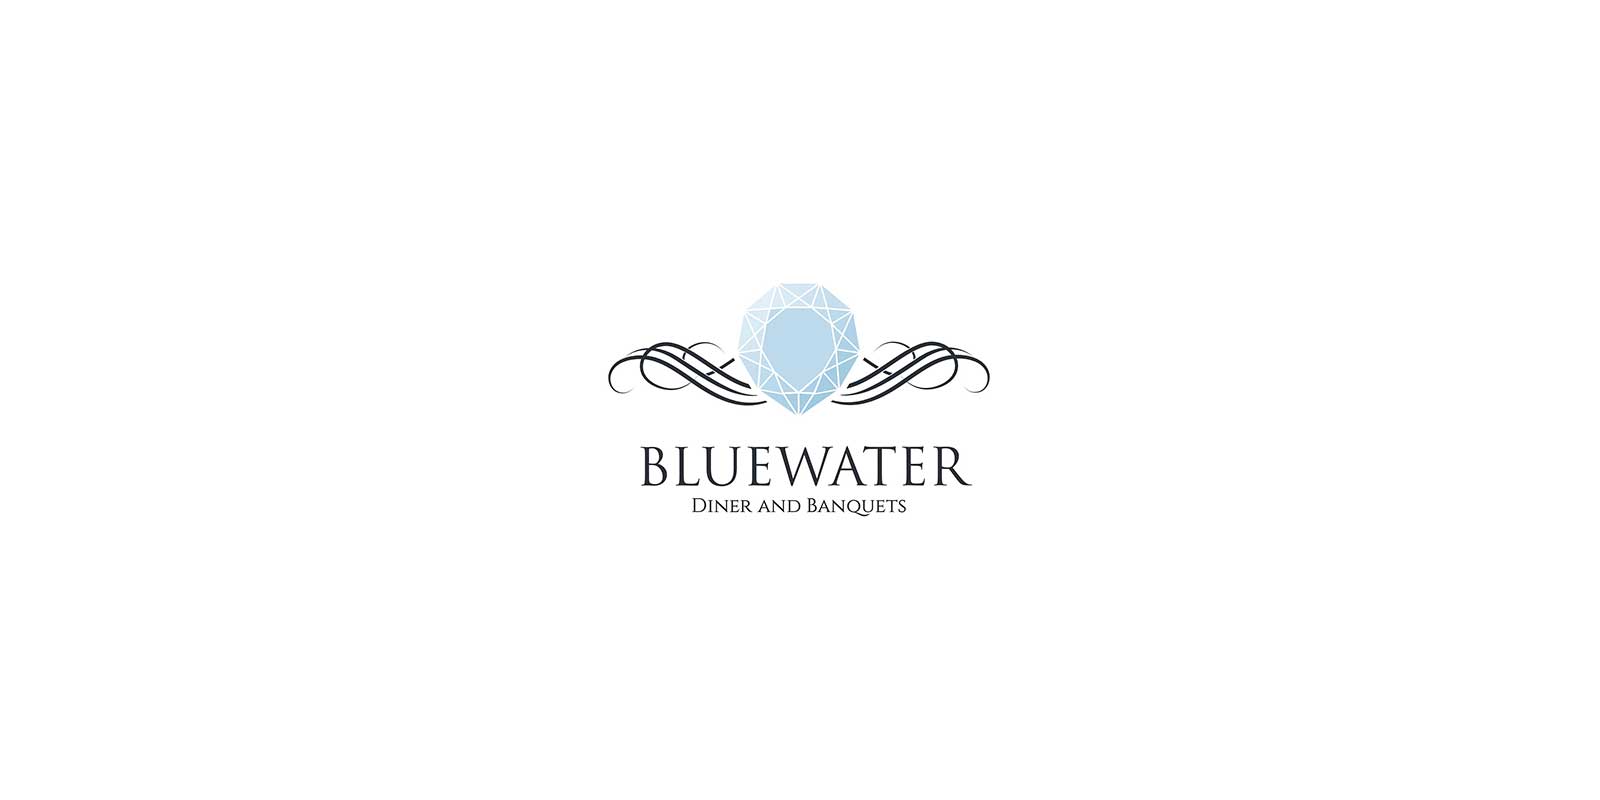 Bluewater Restrurant